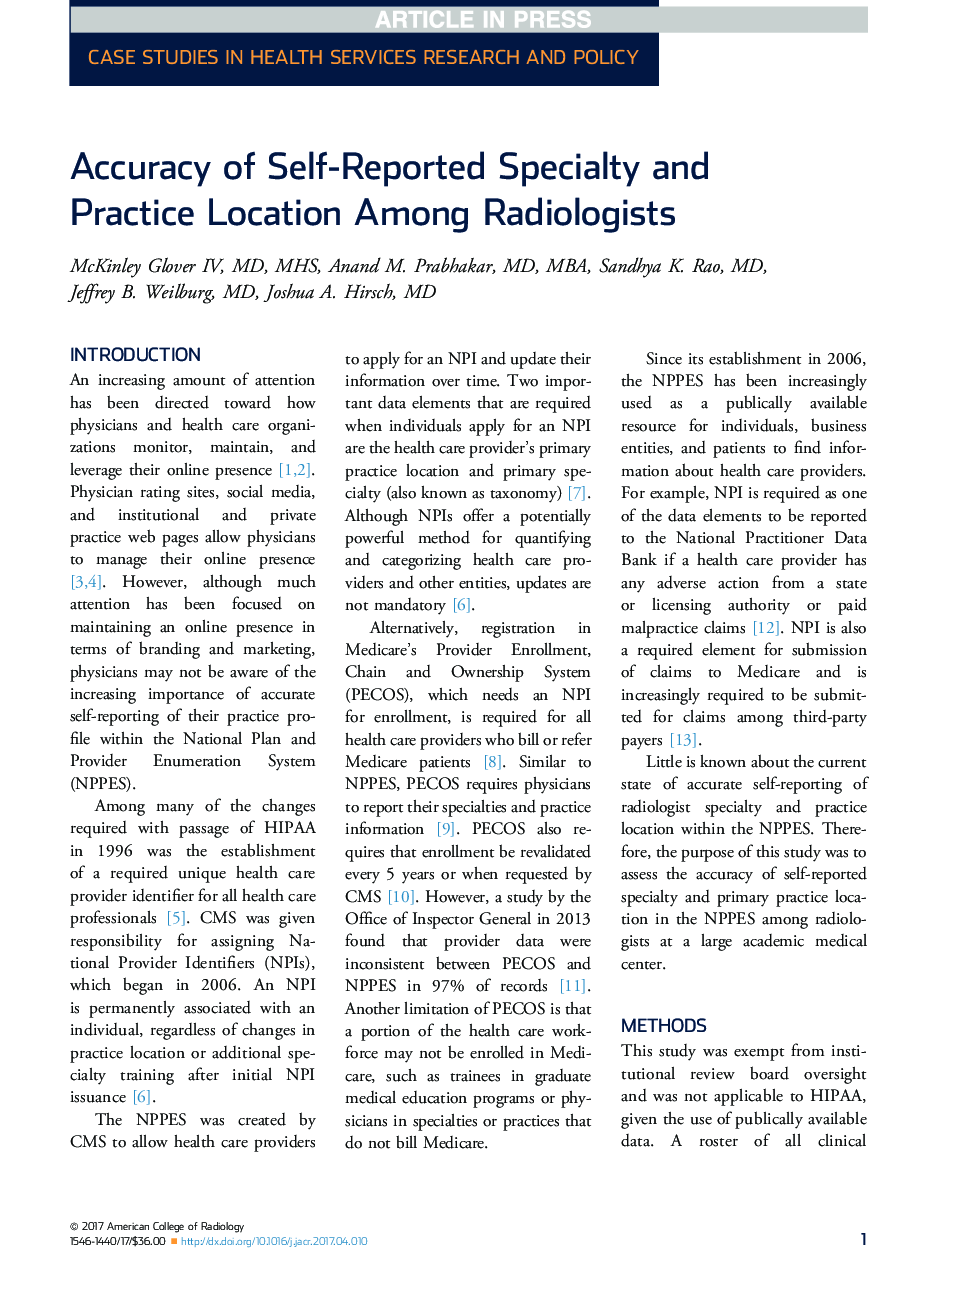 دقت در موقعیت تخصصی و تخصصی خود را از جمله متخصصان رادیولوژی 